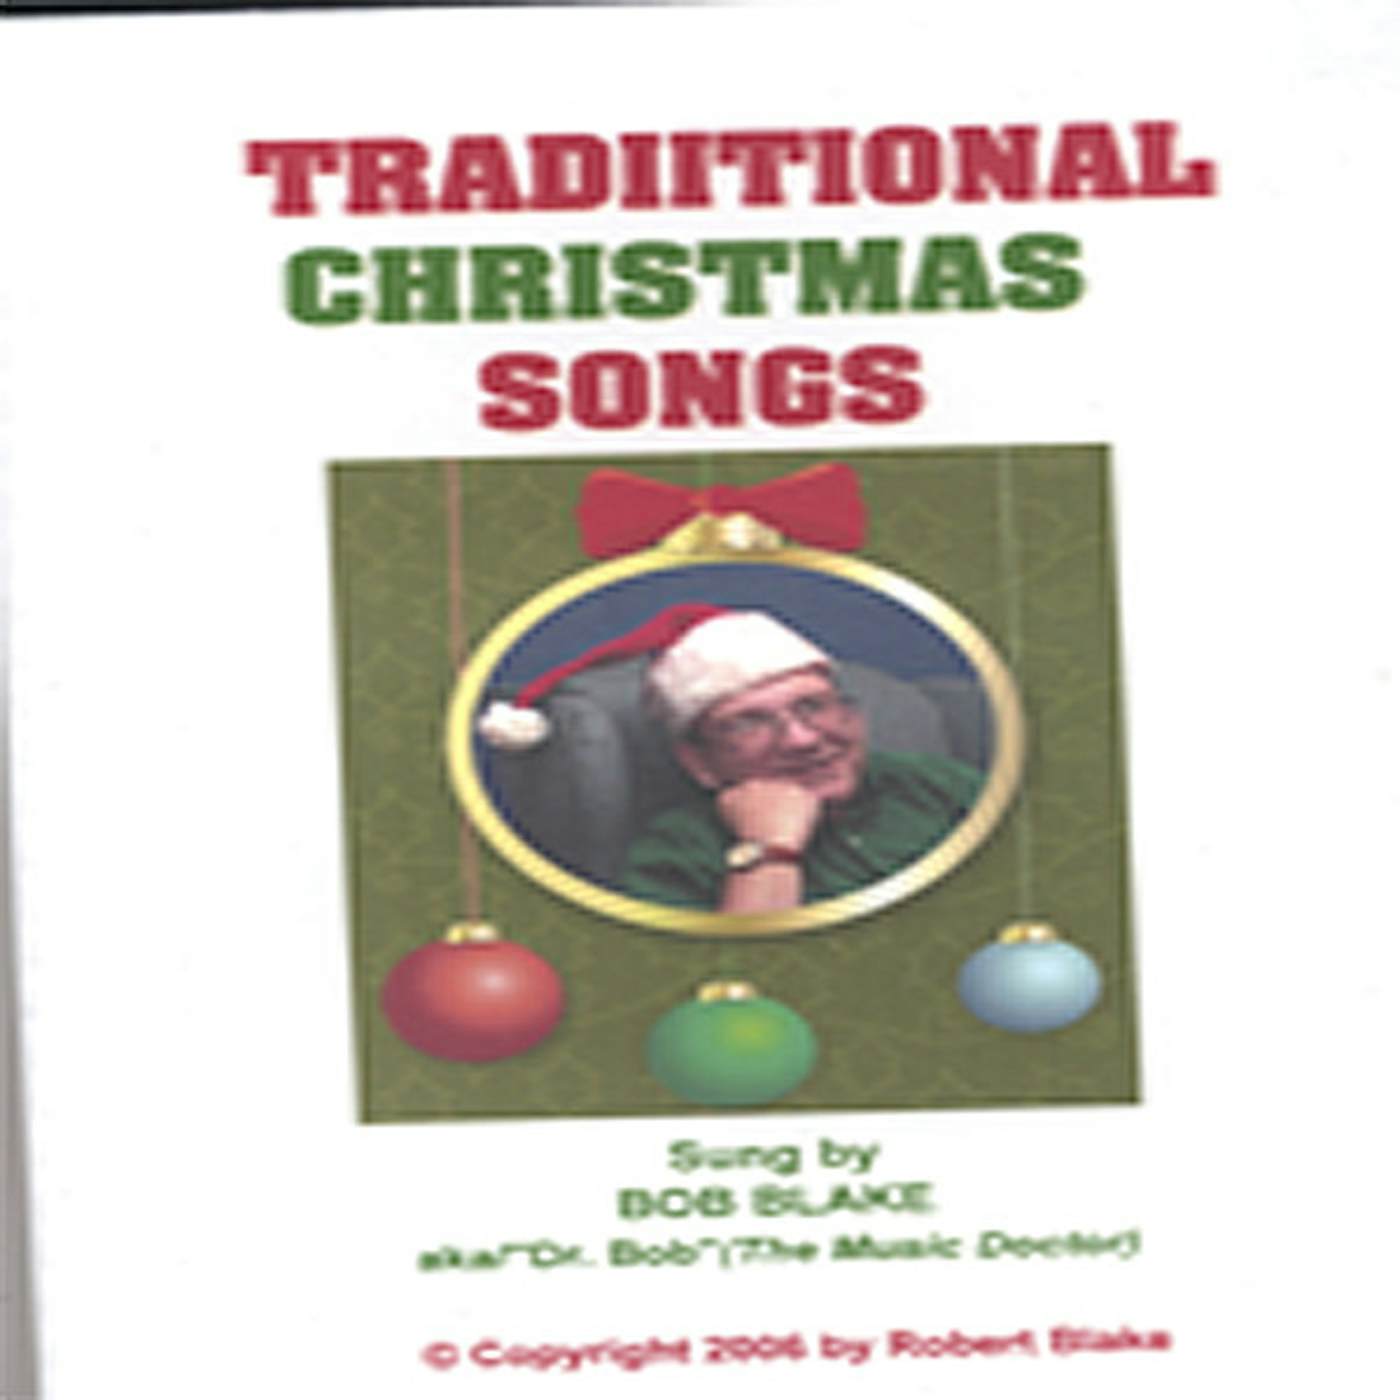 Robert Blake TRADITIONAL CHRISTMAS SONGS CD